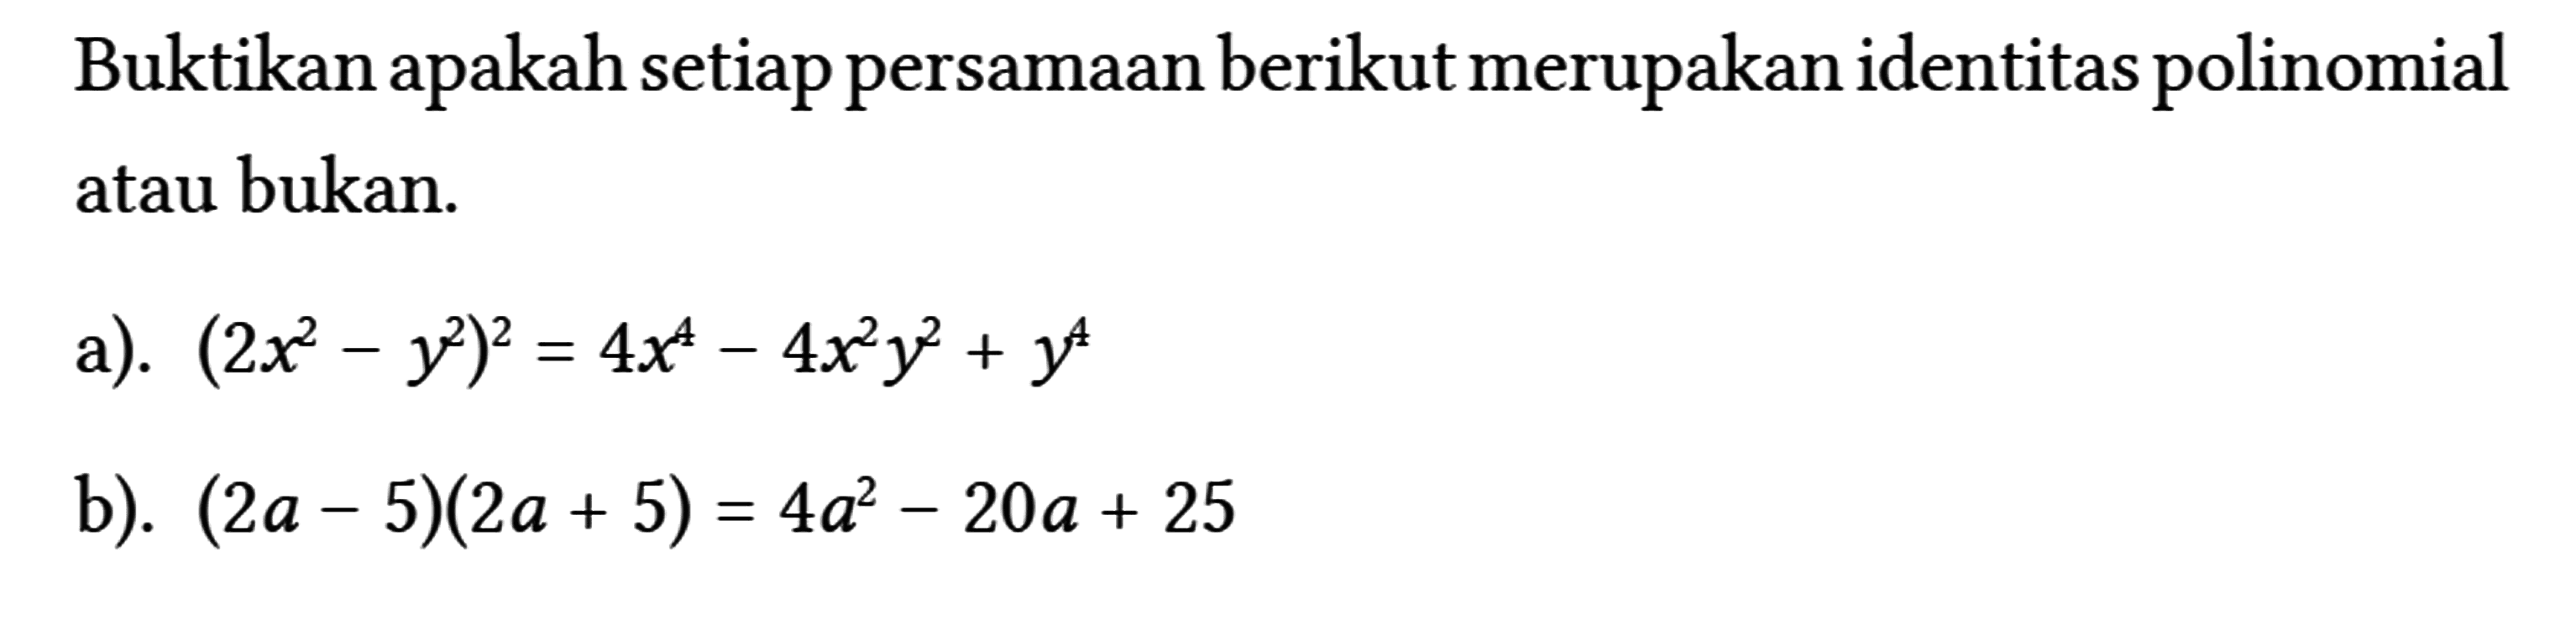 Buktikan apakah setiap persamaan berikut merupakan identitas polinomial atau bukan.
 a). (2 x^(2)-y^(2))^(2)=4 x^(4)-4 x^(2) y^(2)+y^(4) 
 b). (2 a-5)(2 a+5)=4 a^(2)-20 a+25